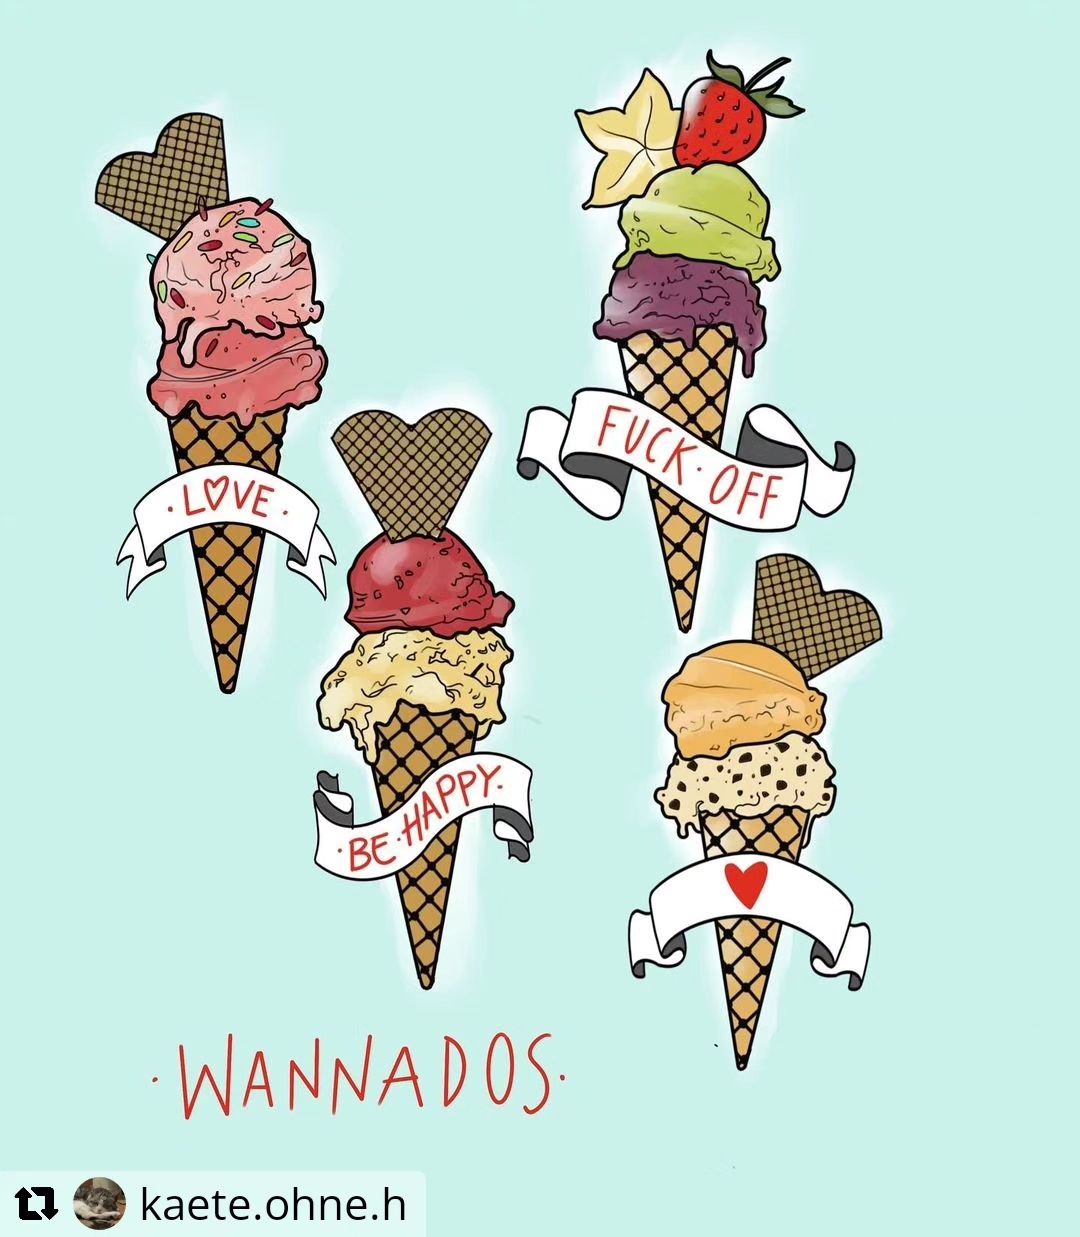 Neue Wannados von @kaete.ohne.h
• • • • • •
Wannados!  Noch freie Termine im Jun